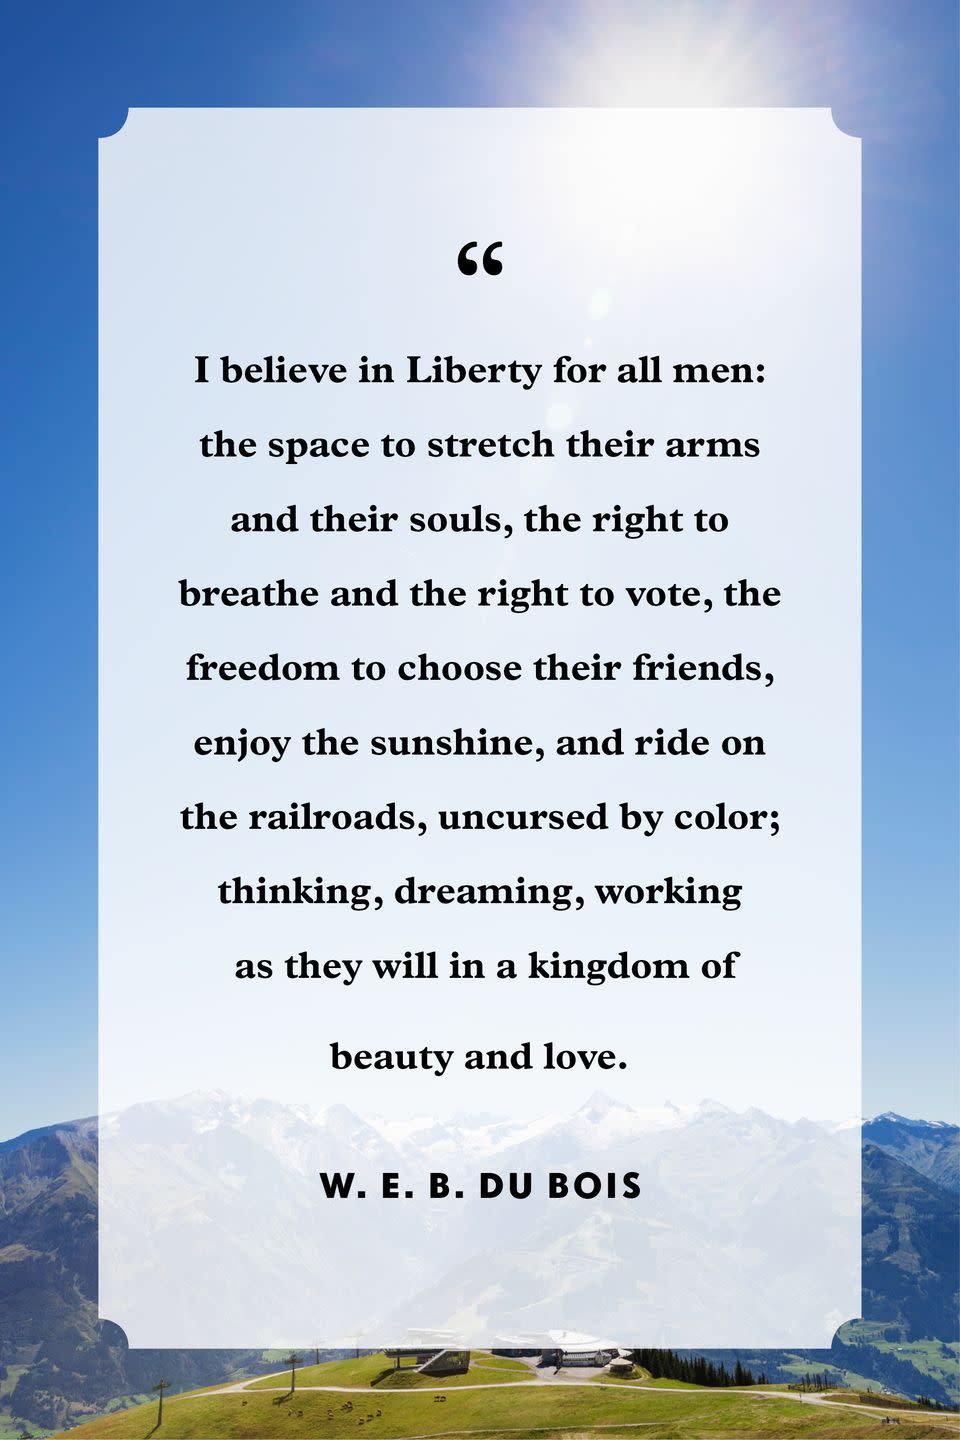 4) W. E. B. Du Bois